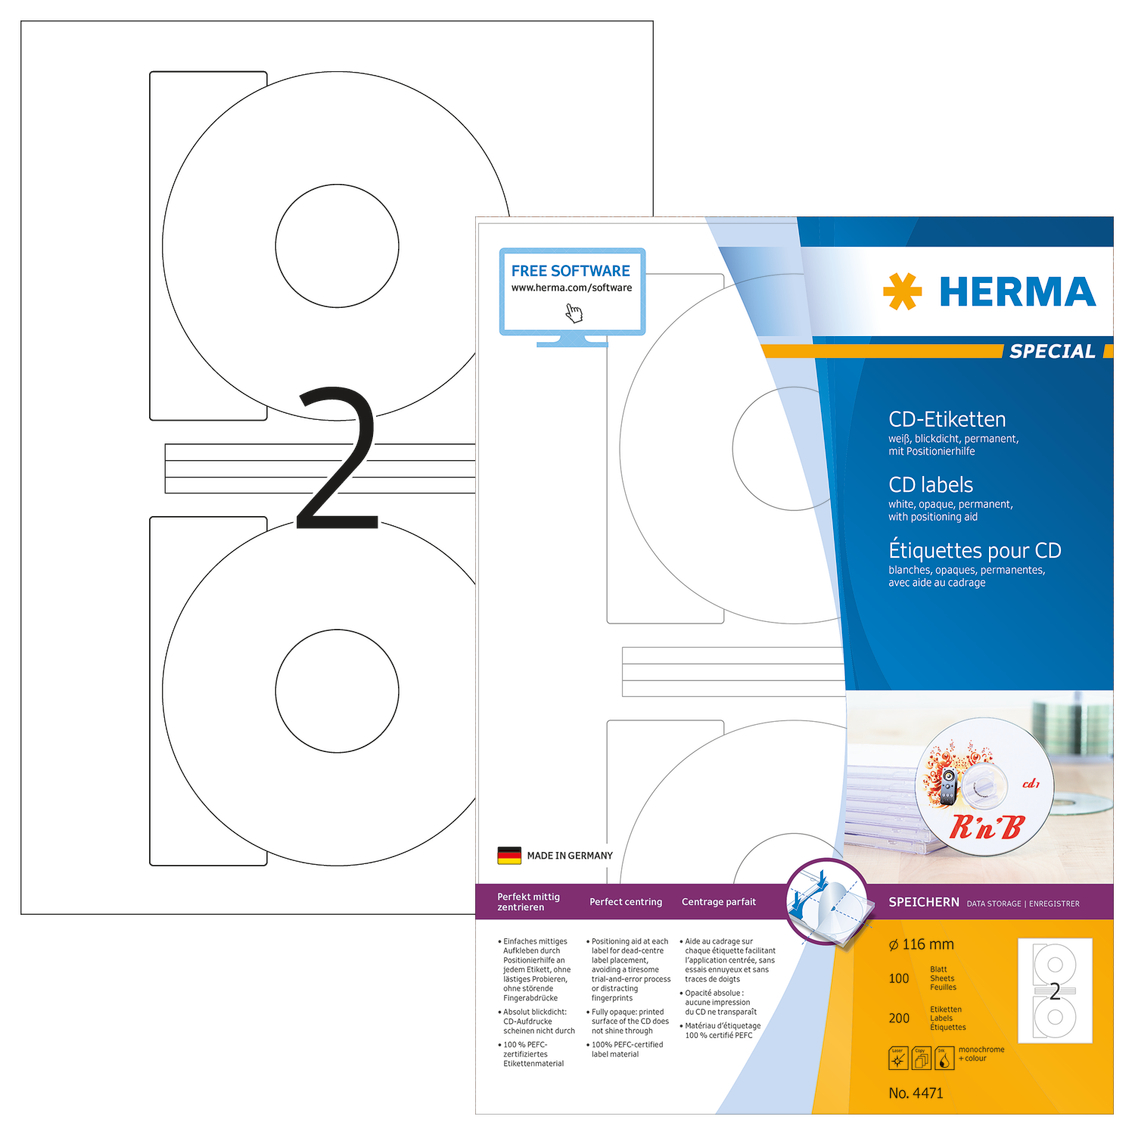 HERMA CD Etiquettes 4471 4471 116mm 200pcs. 100 f.